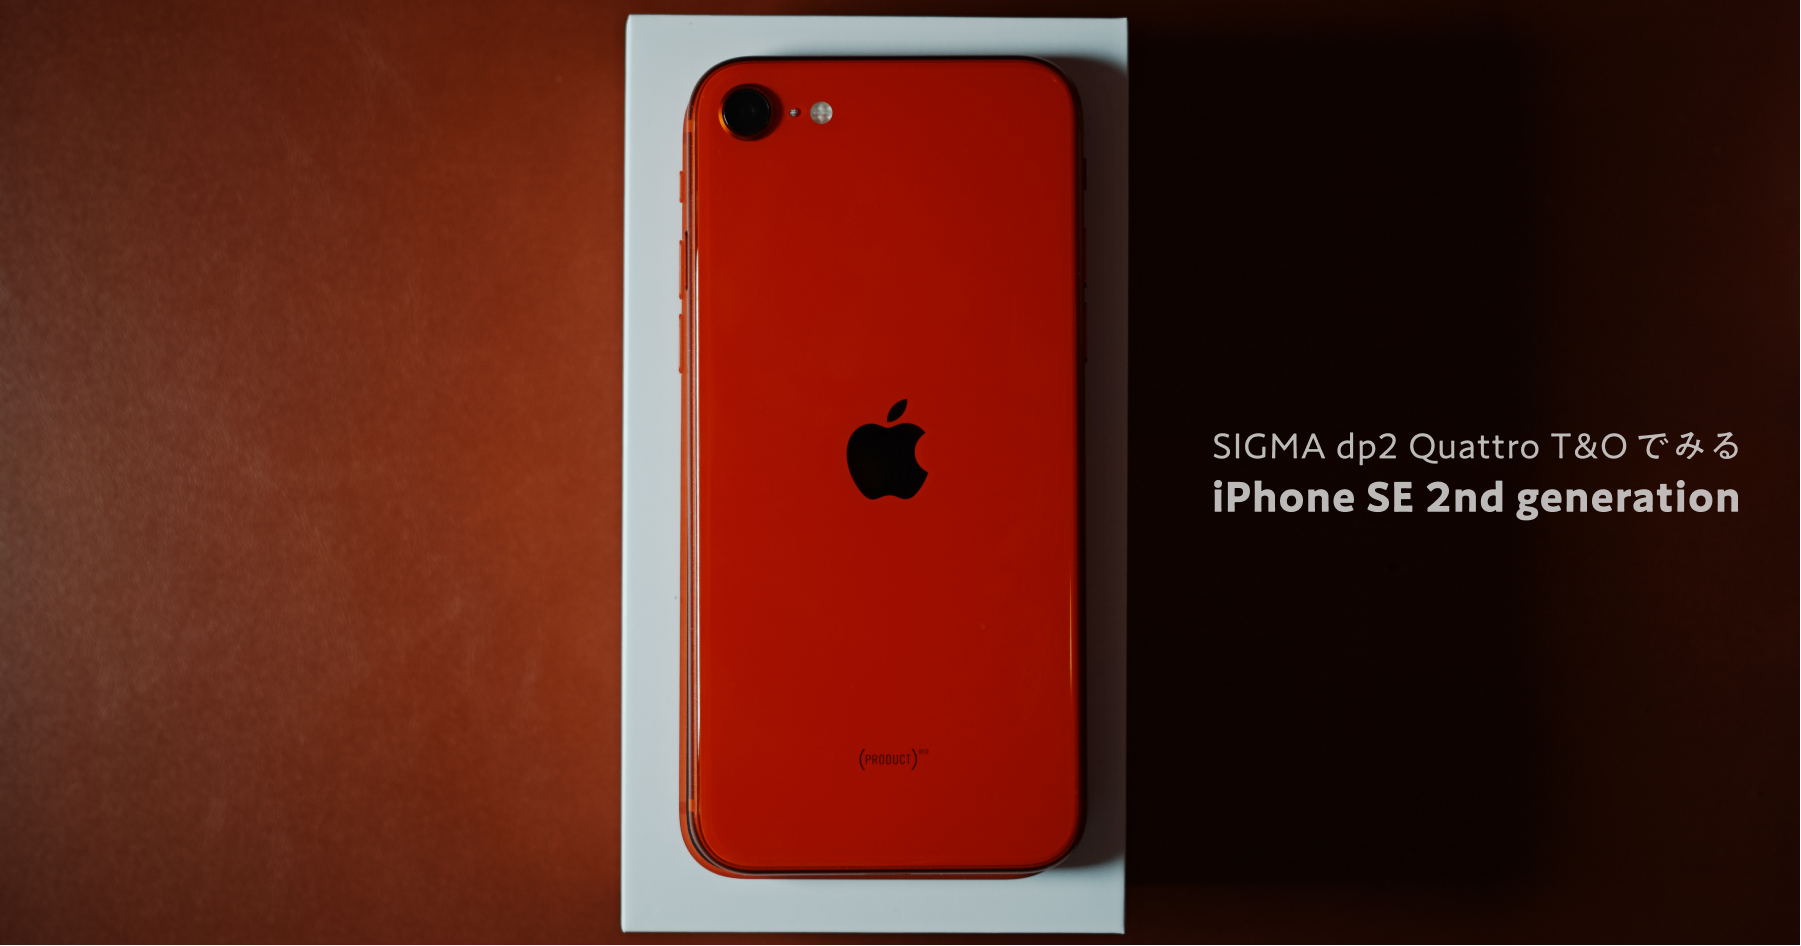 SIGMA dp2 Quattro の T&O で見る iPhone SE (2nd generation)